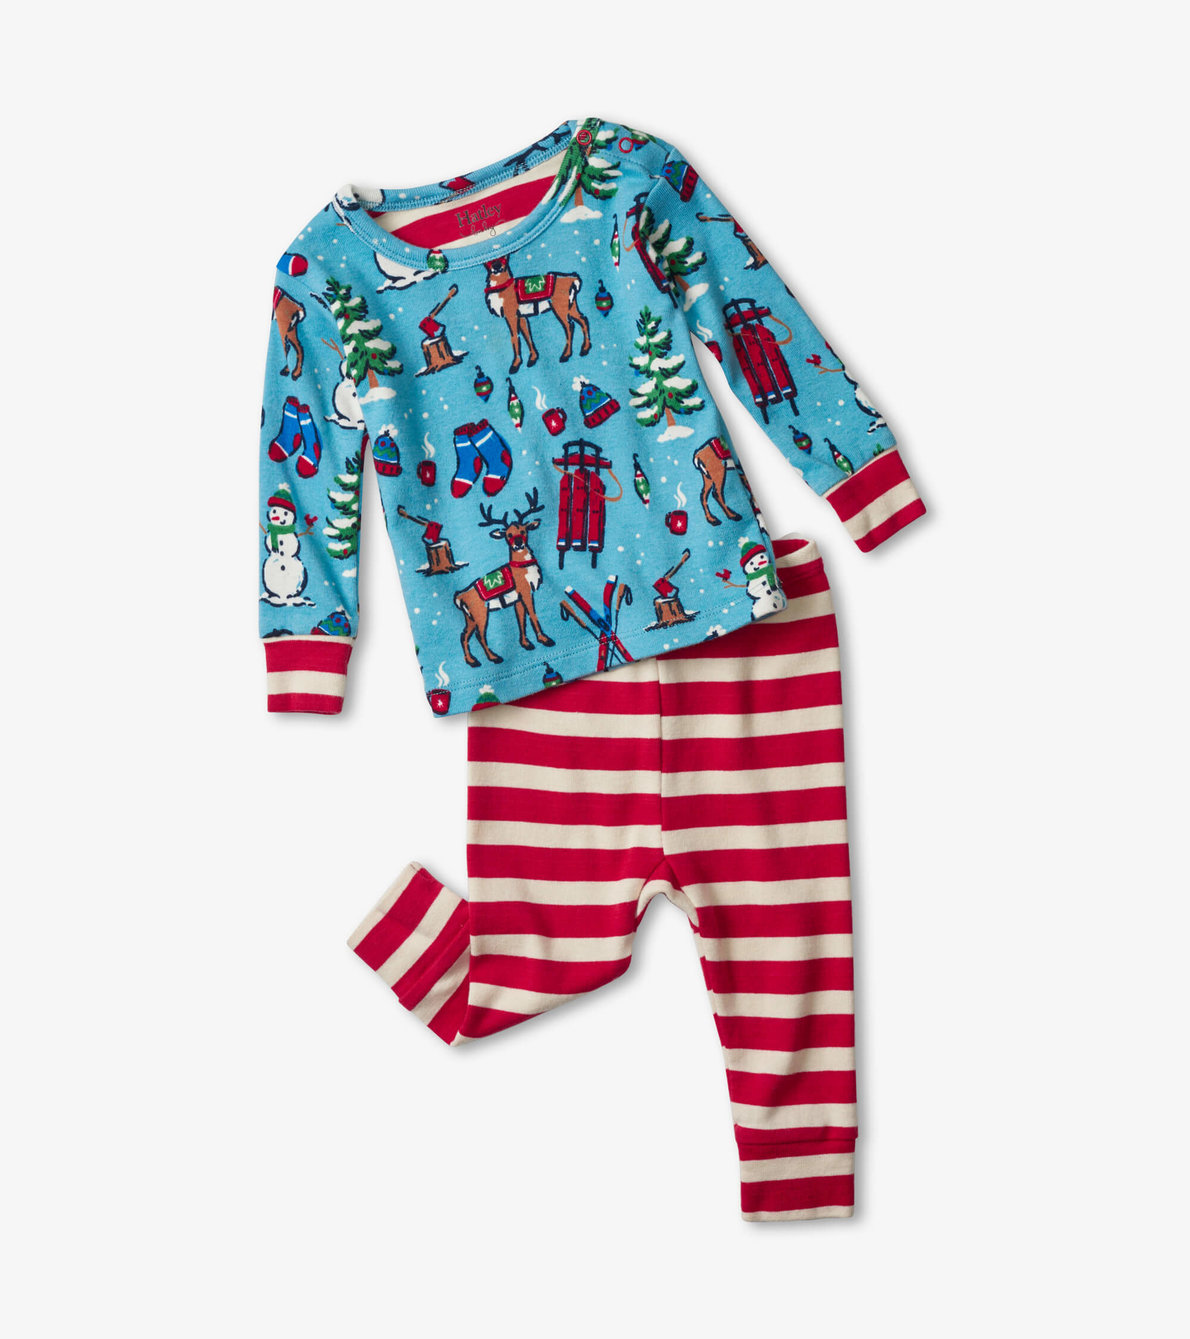 View larger image of Winter Wonderland Organic Cotton Baby Pajama Set